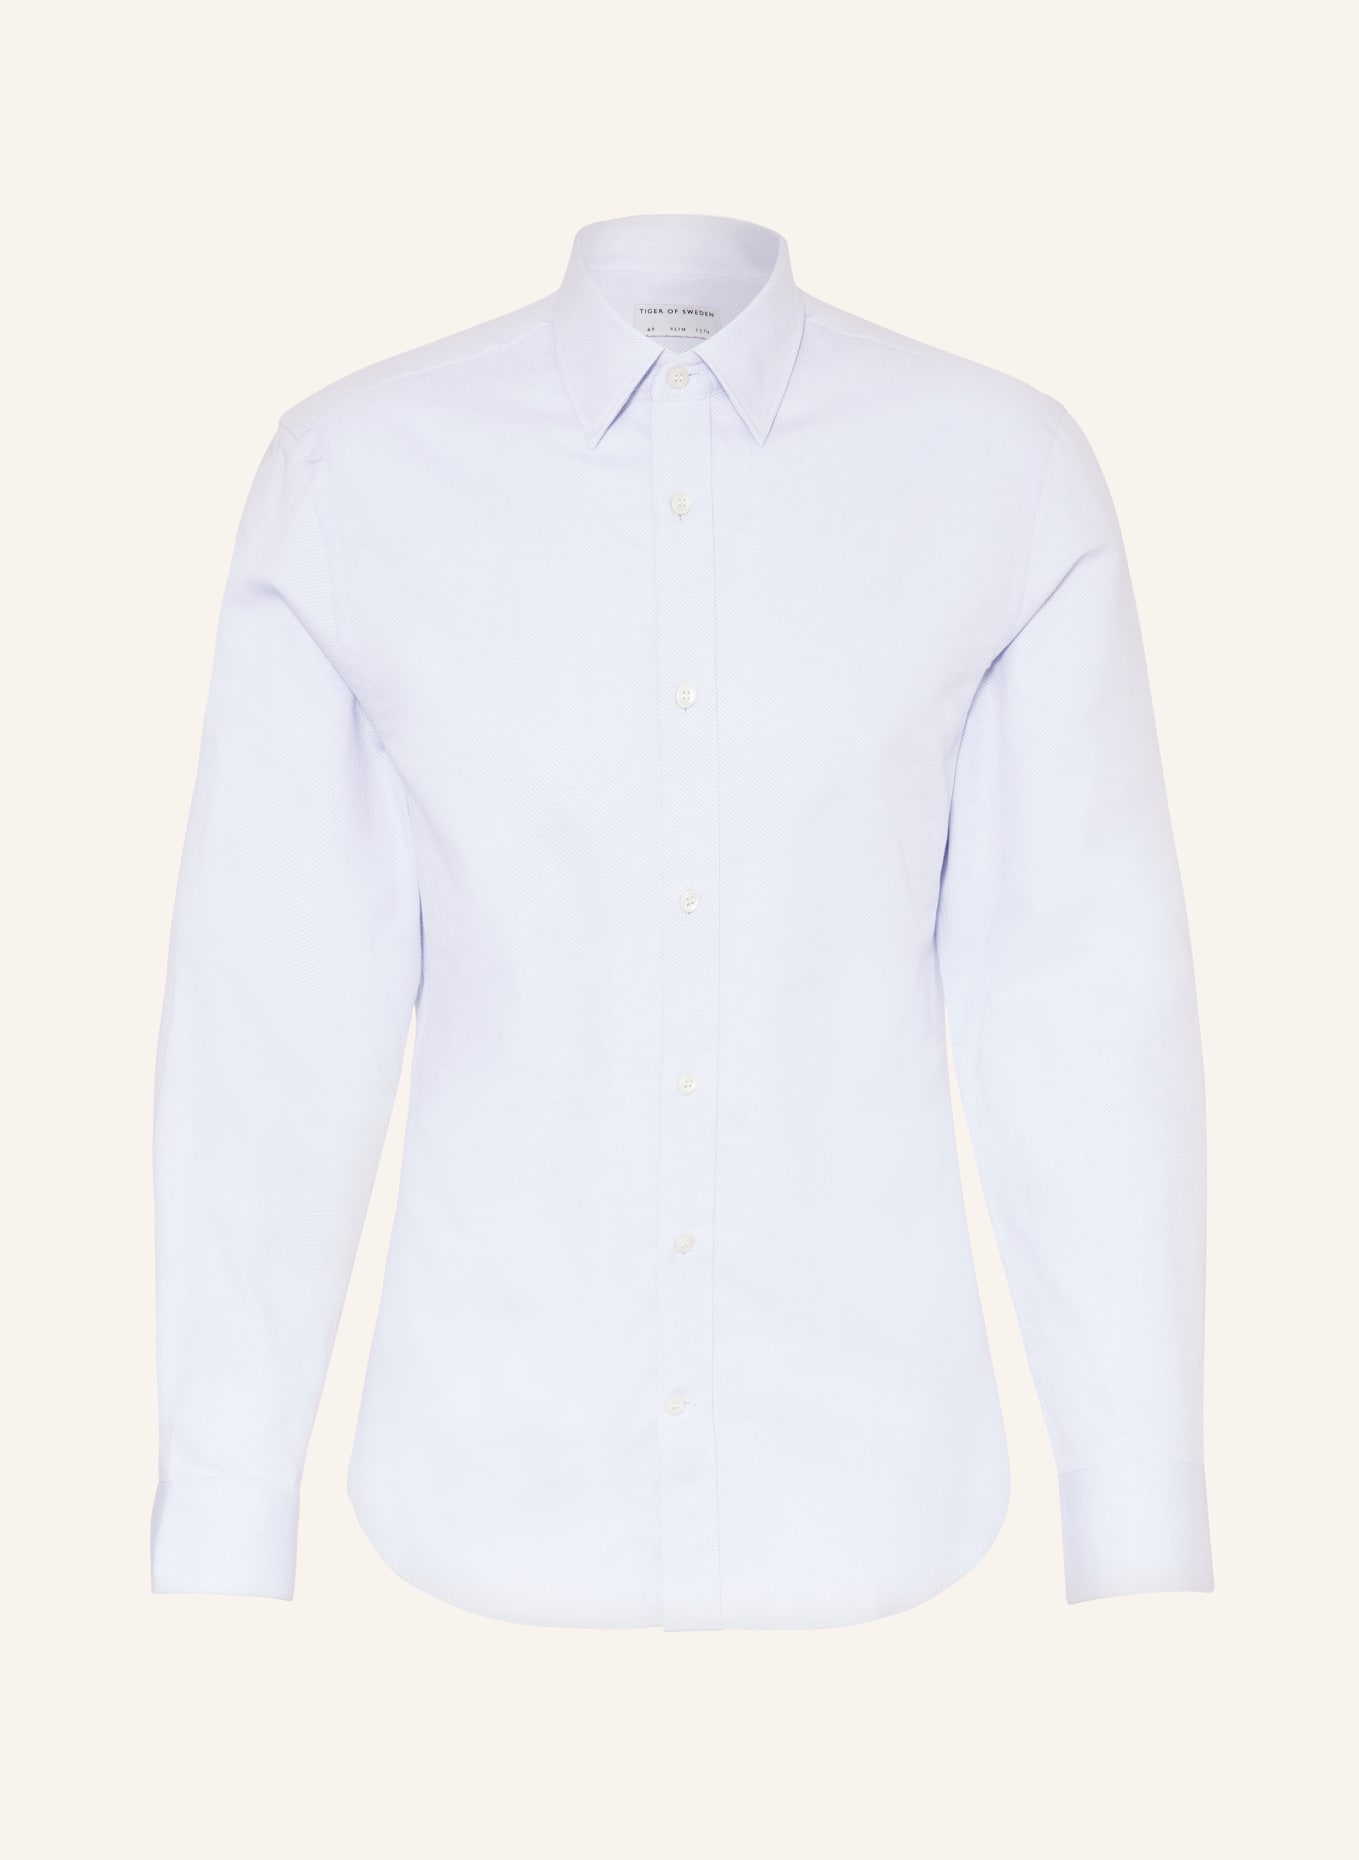 TIGER OF SWEDEN Shirt ADLEY slim fit, Color: LIGHT BLUE (Image 1)